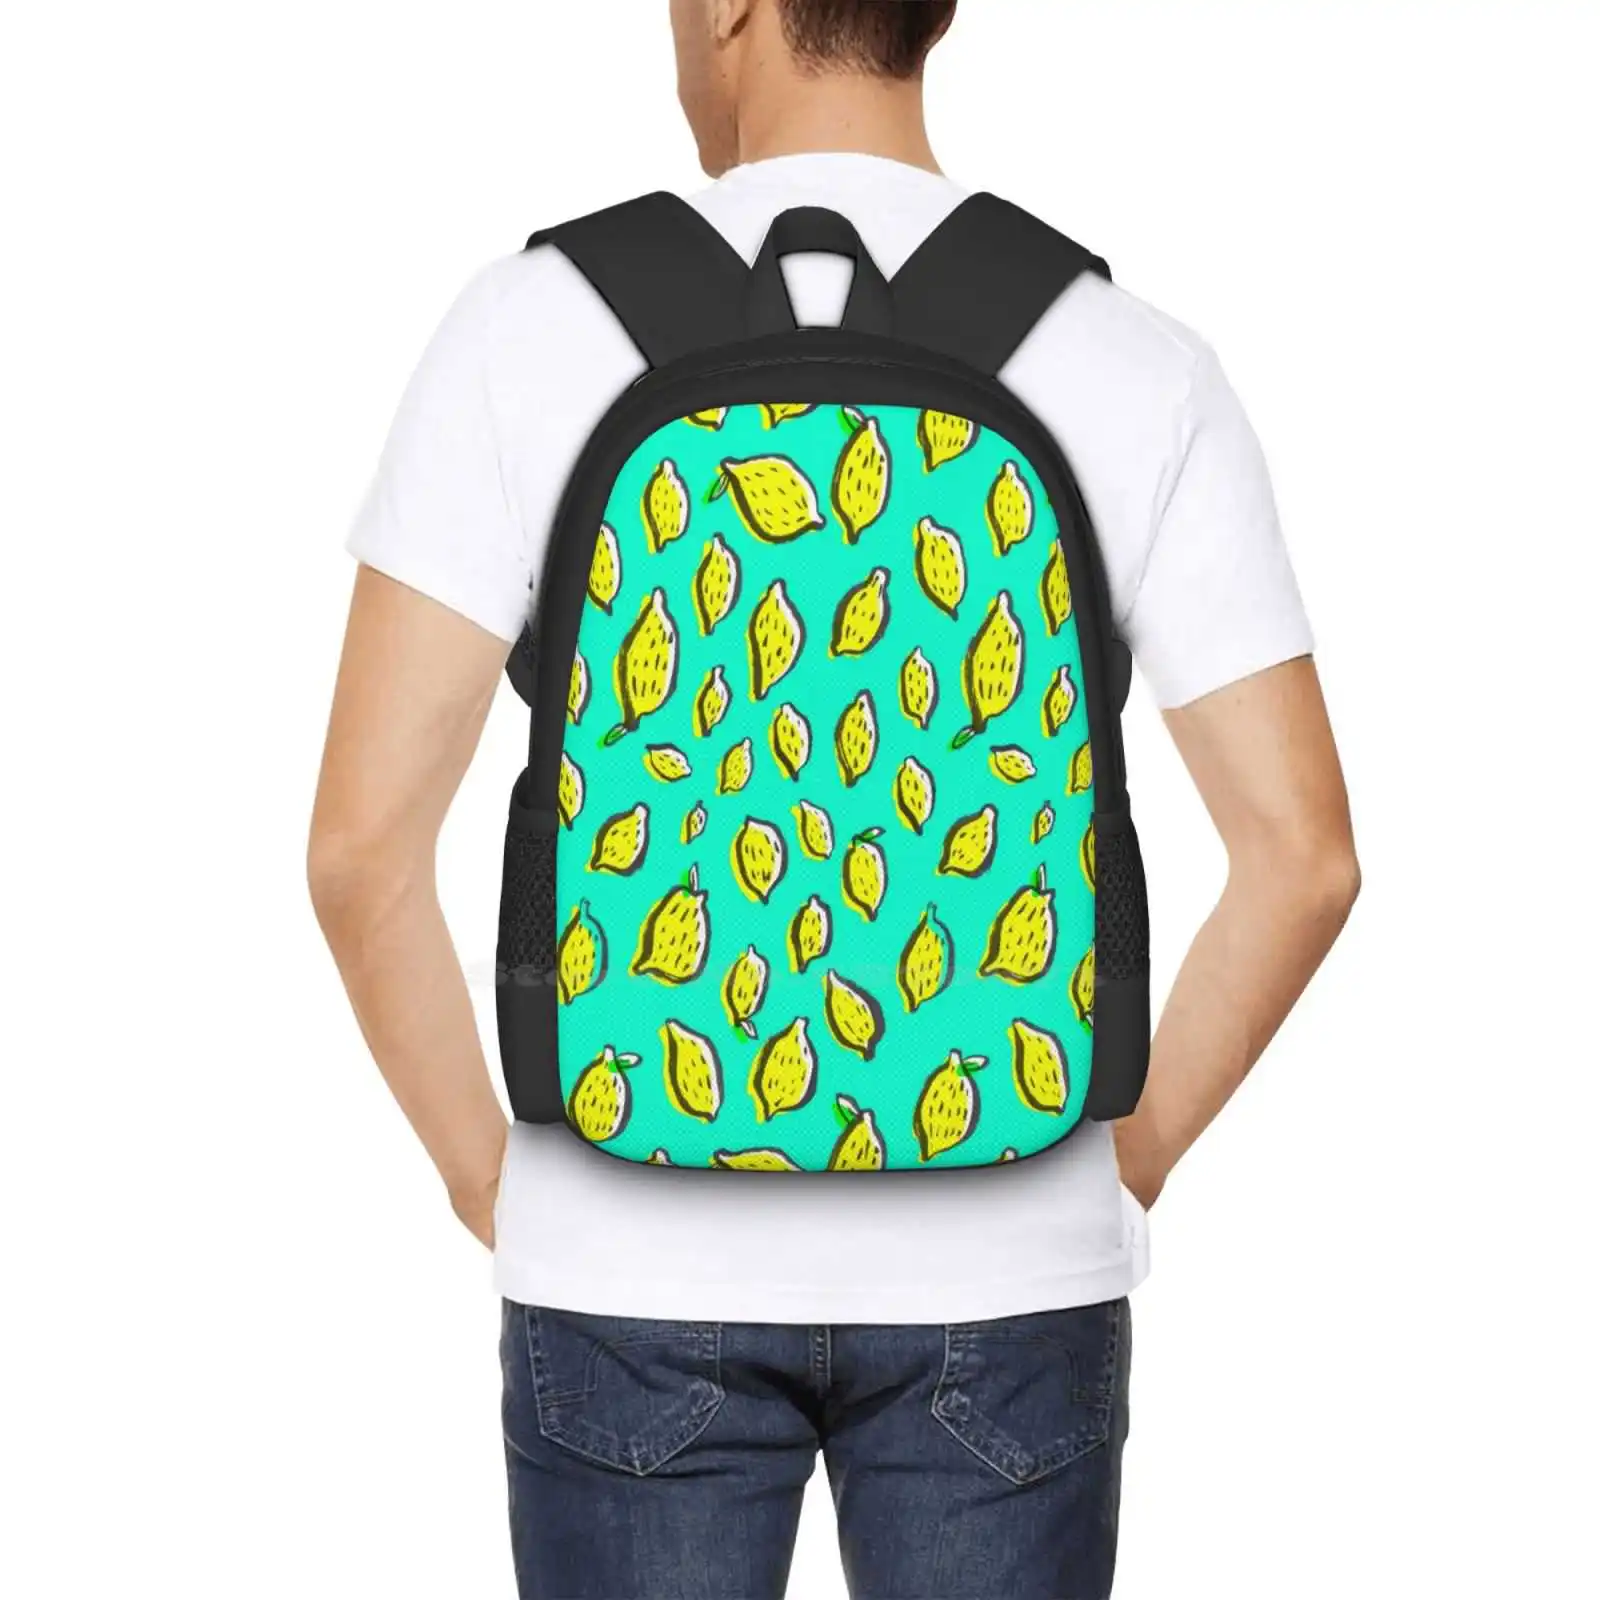 Весенние лимоны, рюкзак для подростков, Дизайн рюкзаков для студентов колледжа, Сумки с лимонными фруктами, еда, Желтый графический дизайн, природа